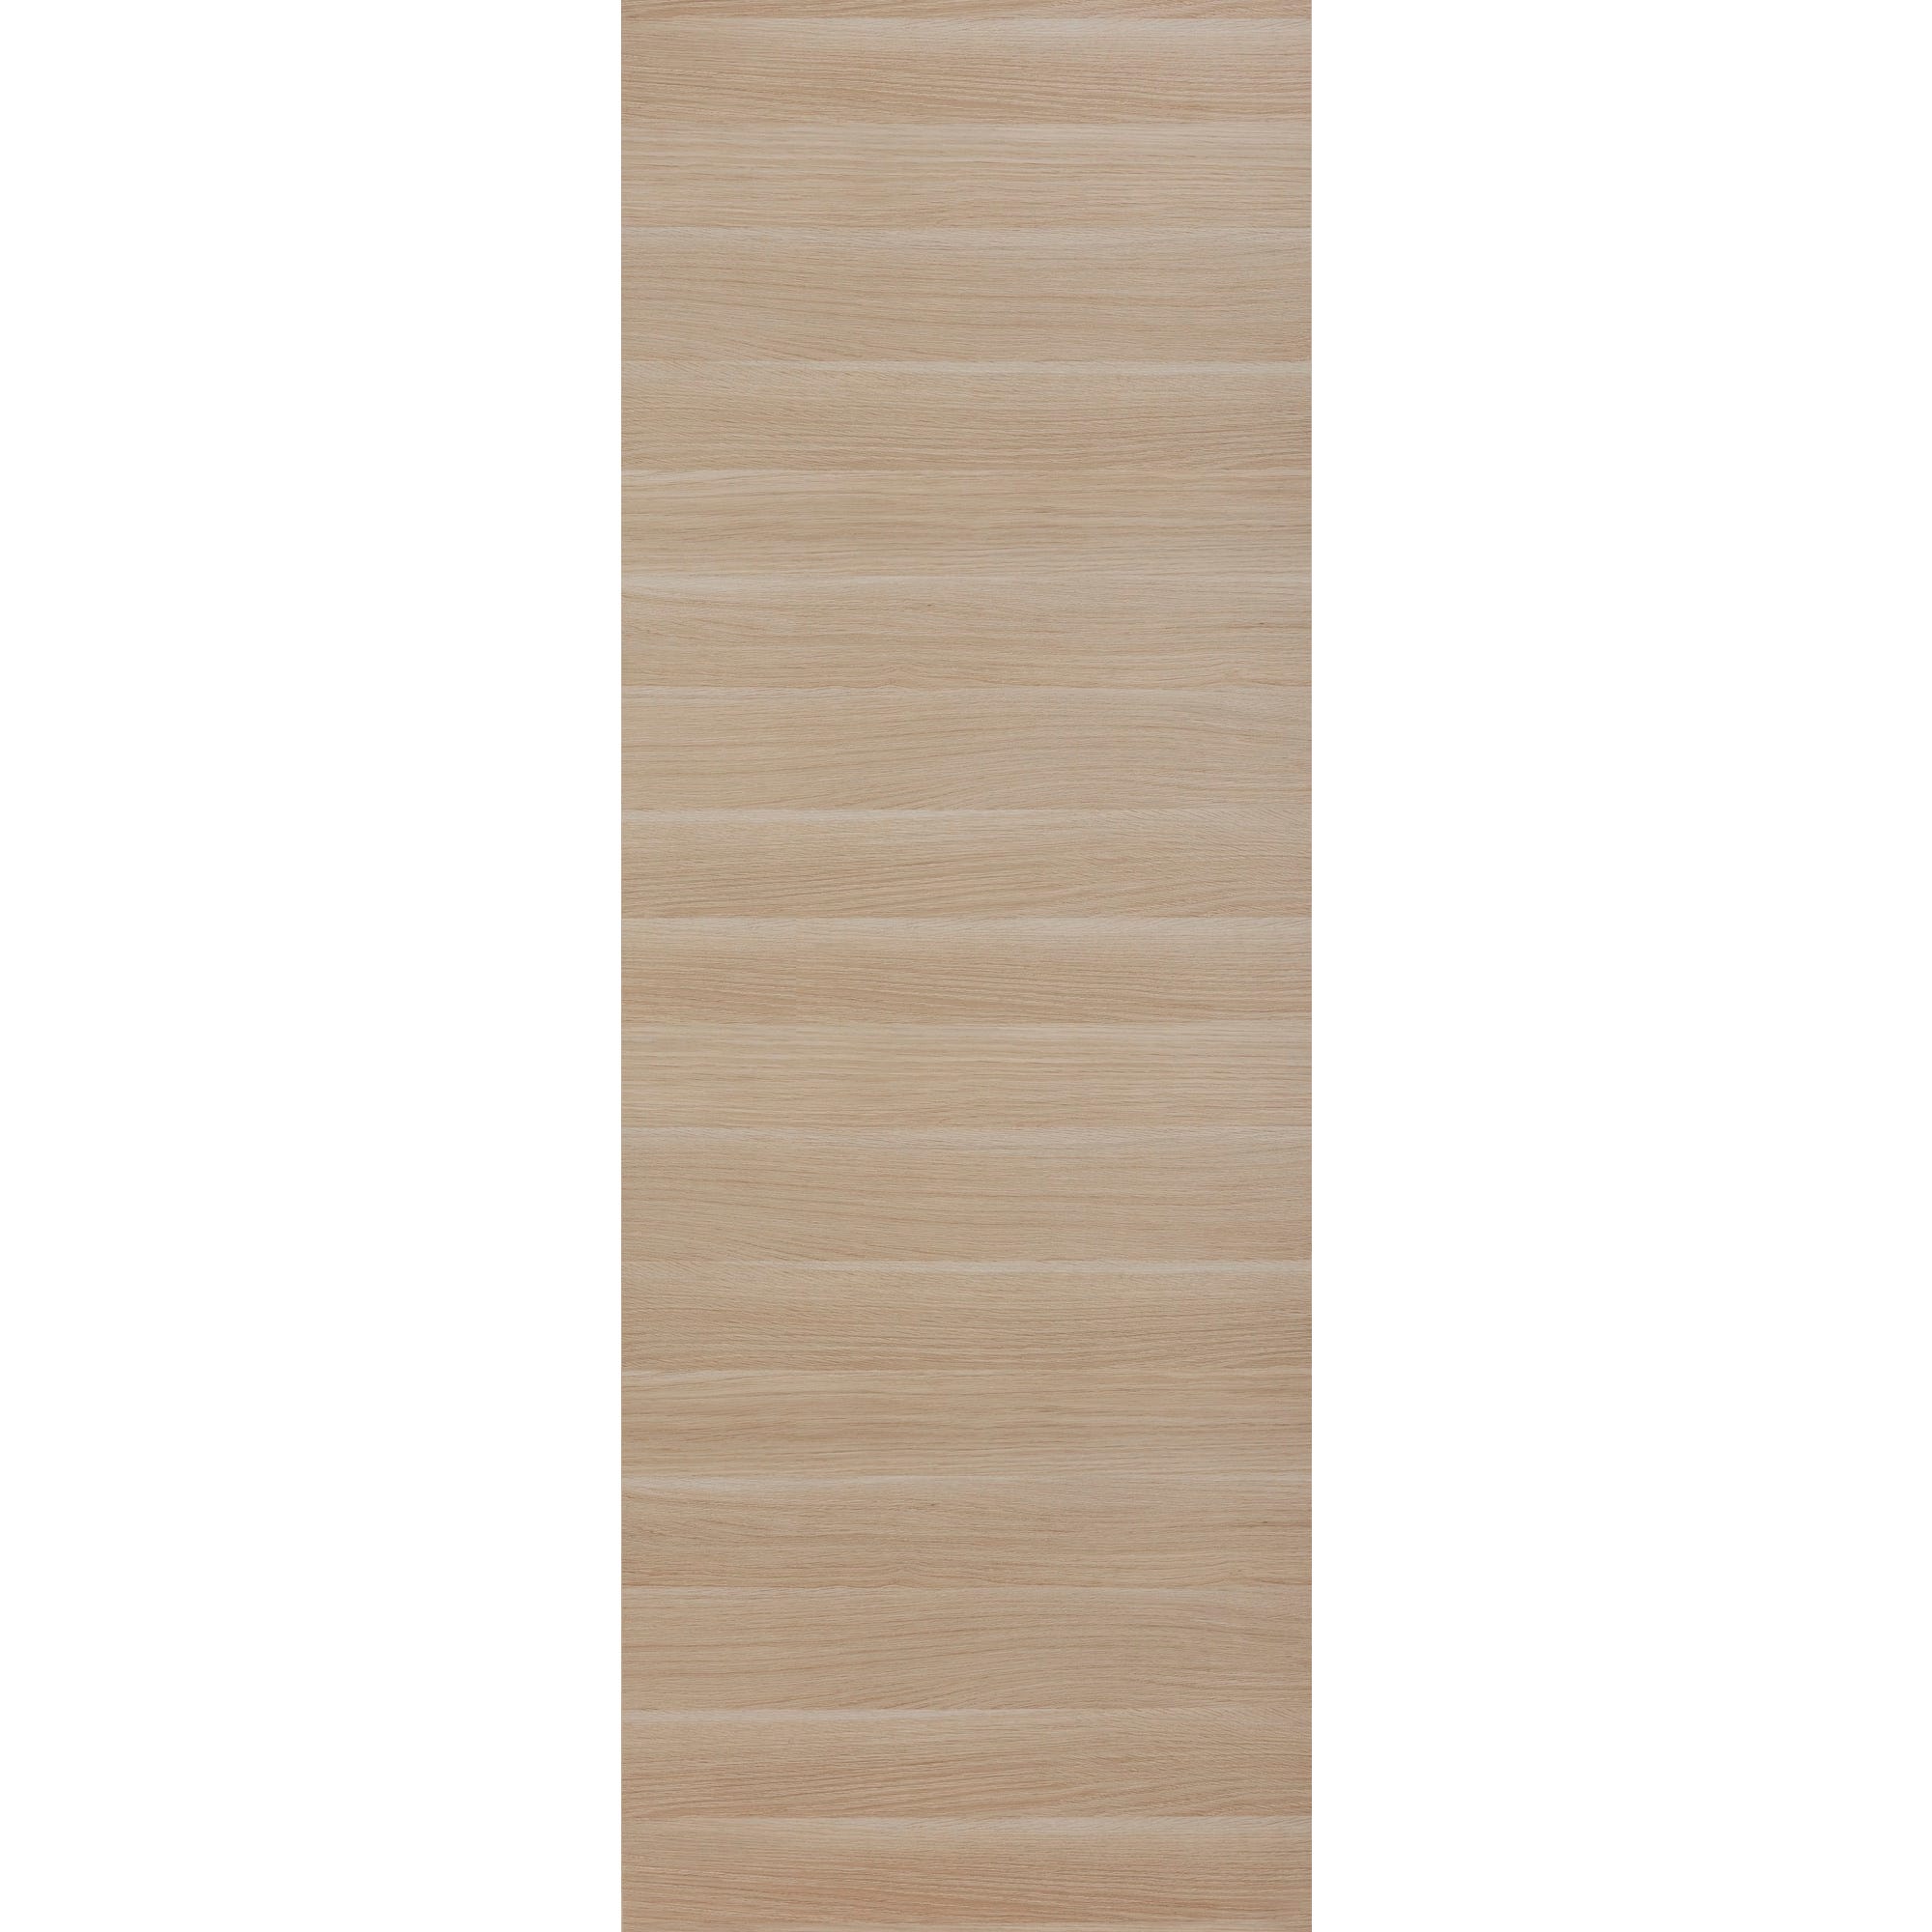 Porte seule revêtue décor chêne naturel structuré horizontal H.204 x l.73 cm Egio - GIMM 0